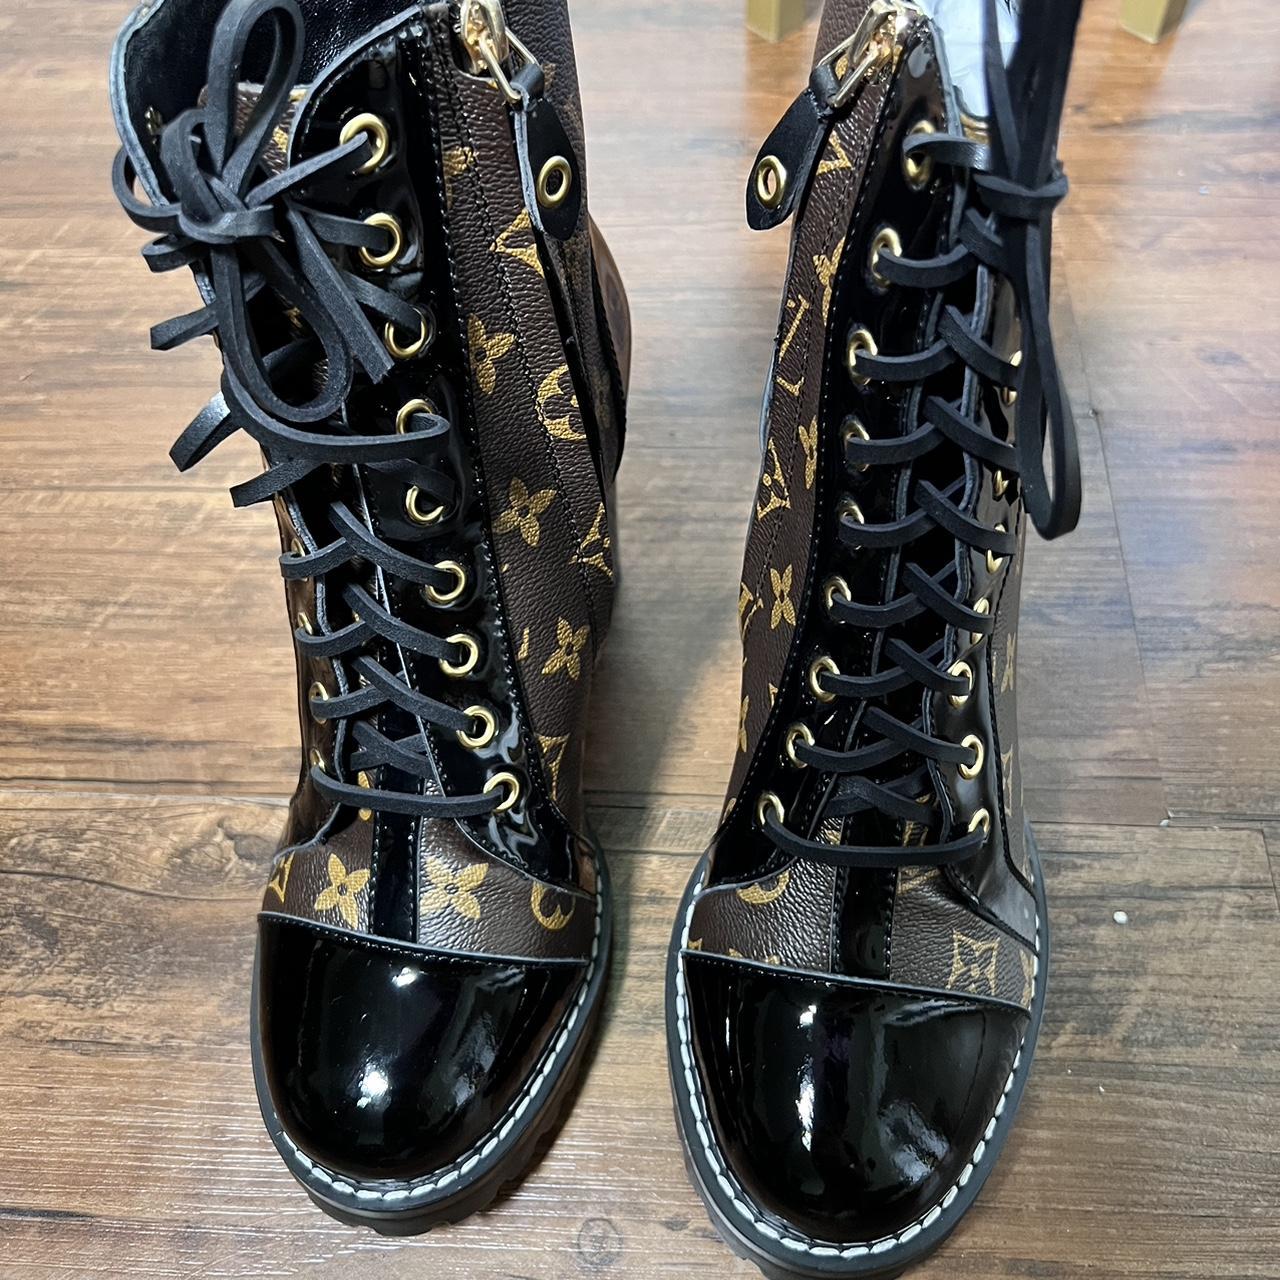 UGG x Louis Vuitton , #UGG #LouisVuitton #boots #womens